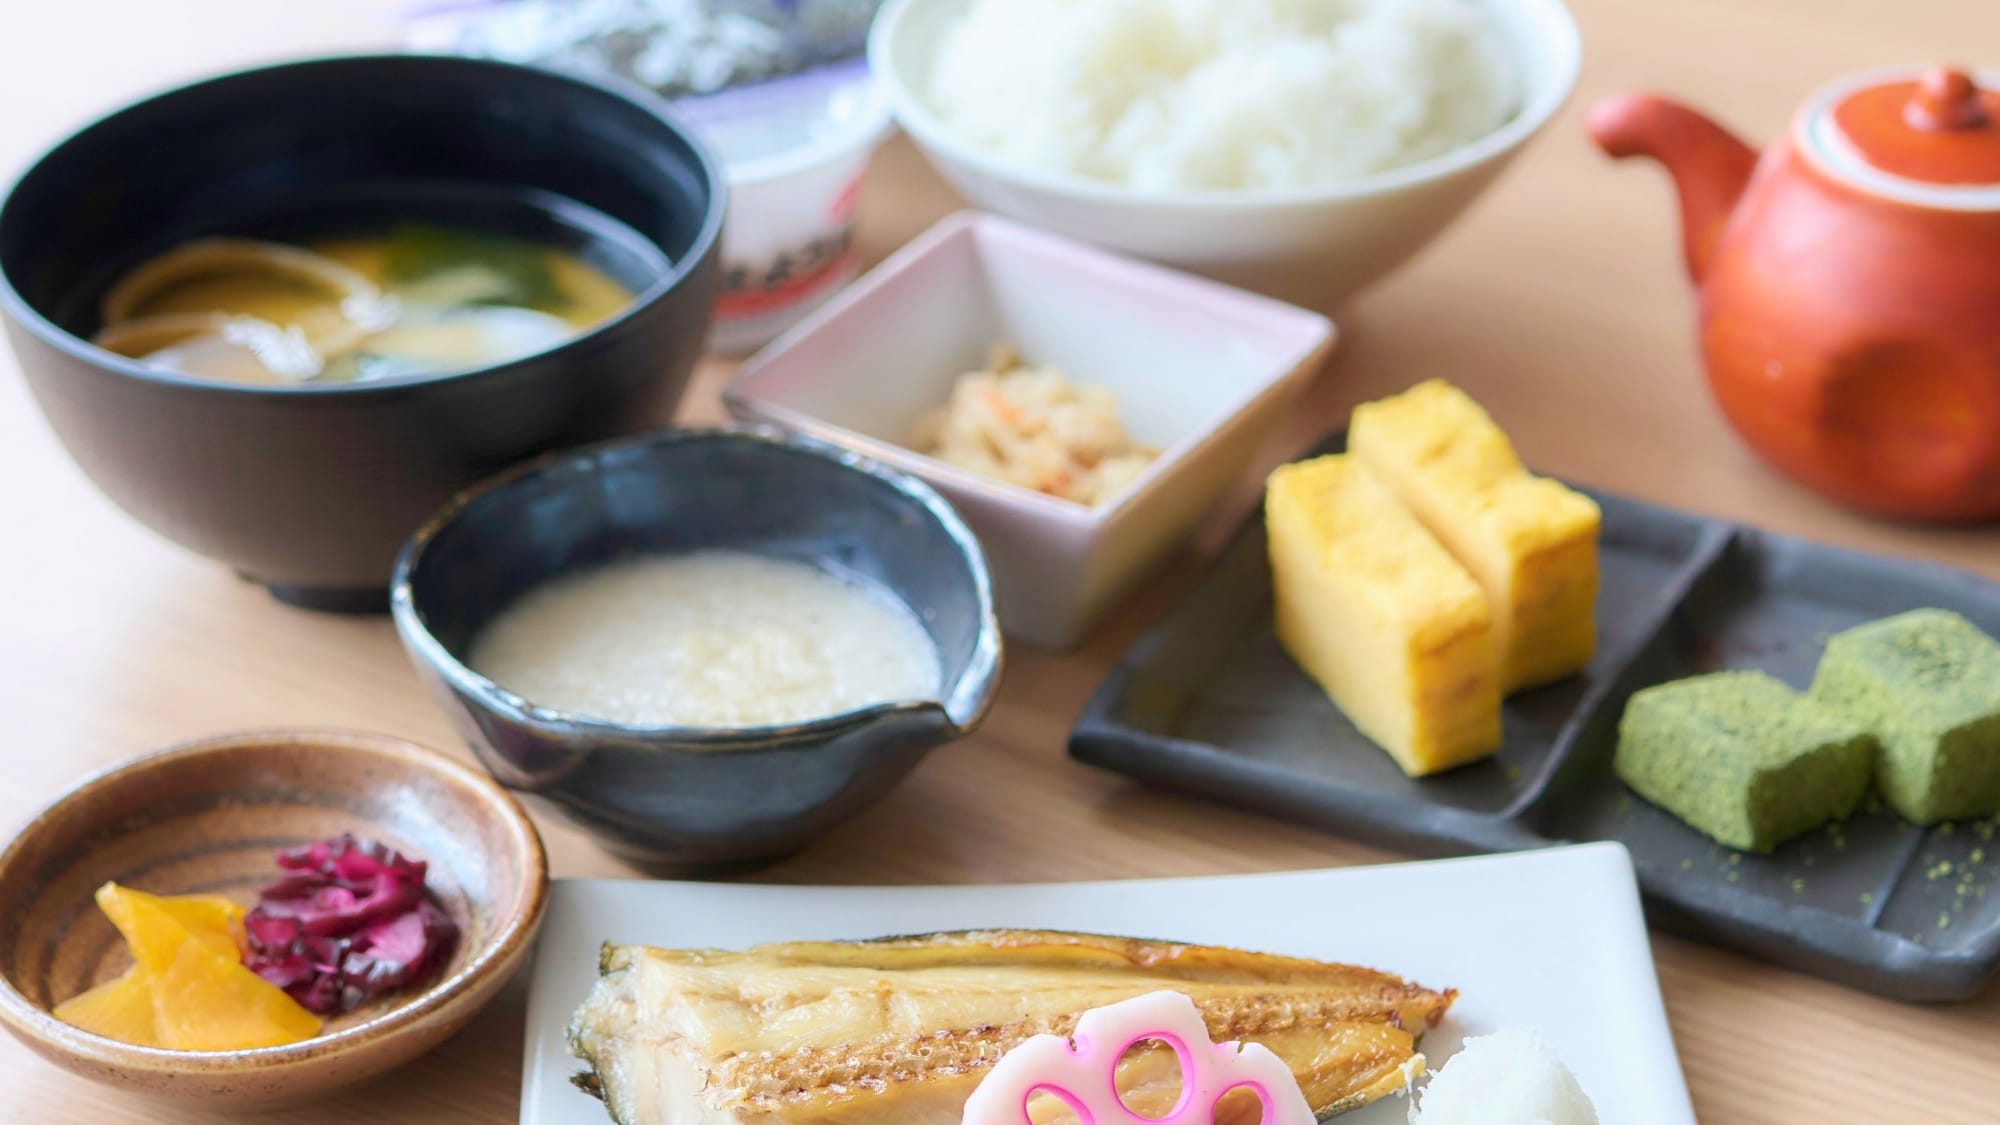 日式早餐：每天早上煮的米饭被老顾客评价为“非常好吃！”。 *所有照片仅供参考。